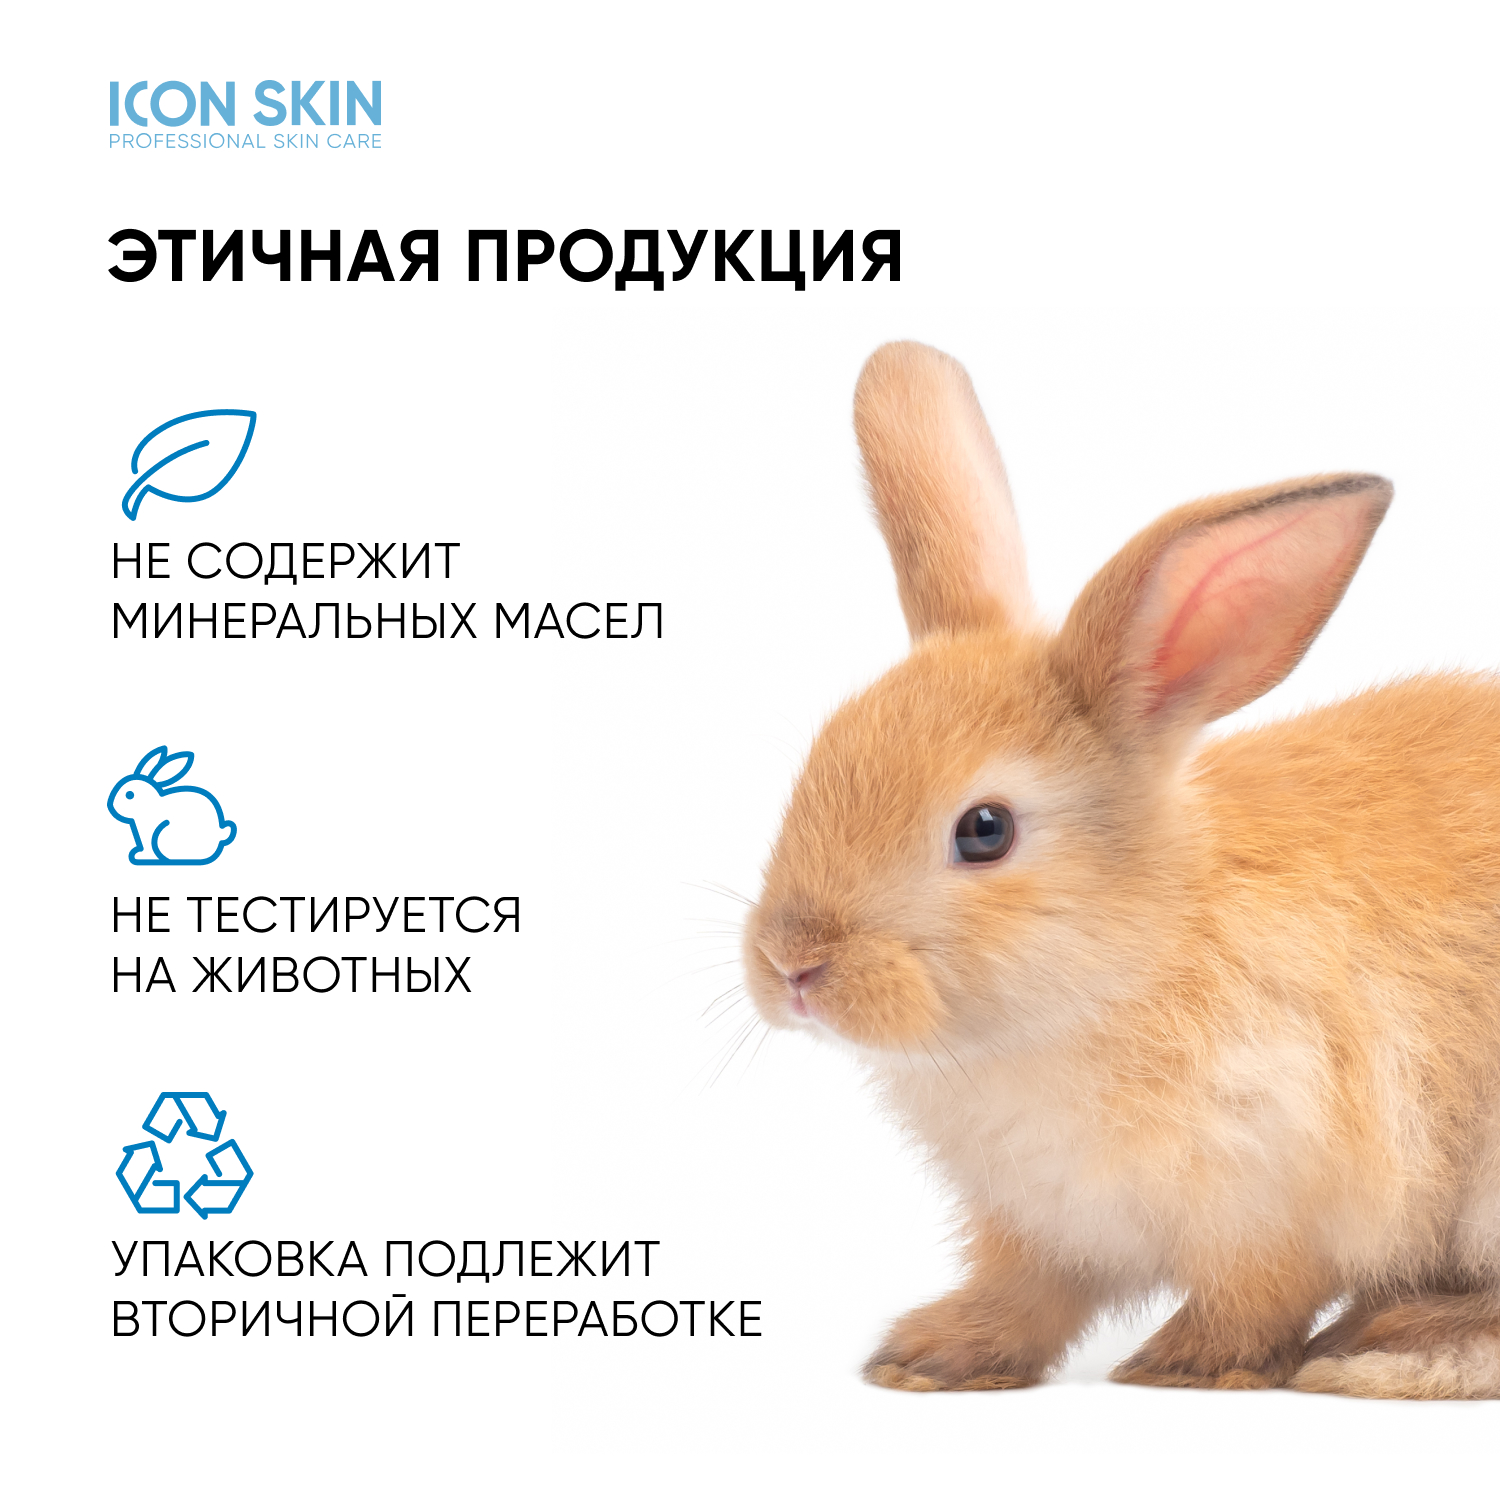 Пилинг ICON SKIN для проблемной кожи 11% 30 мл - фото 11